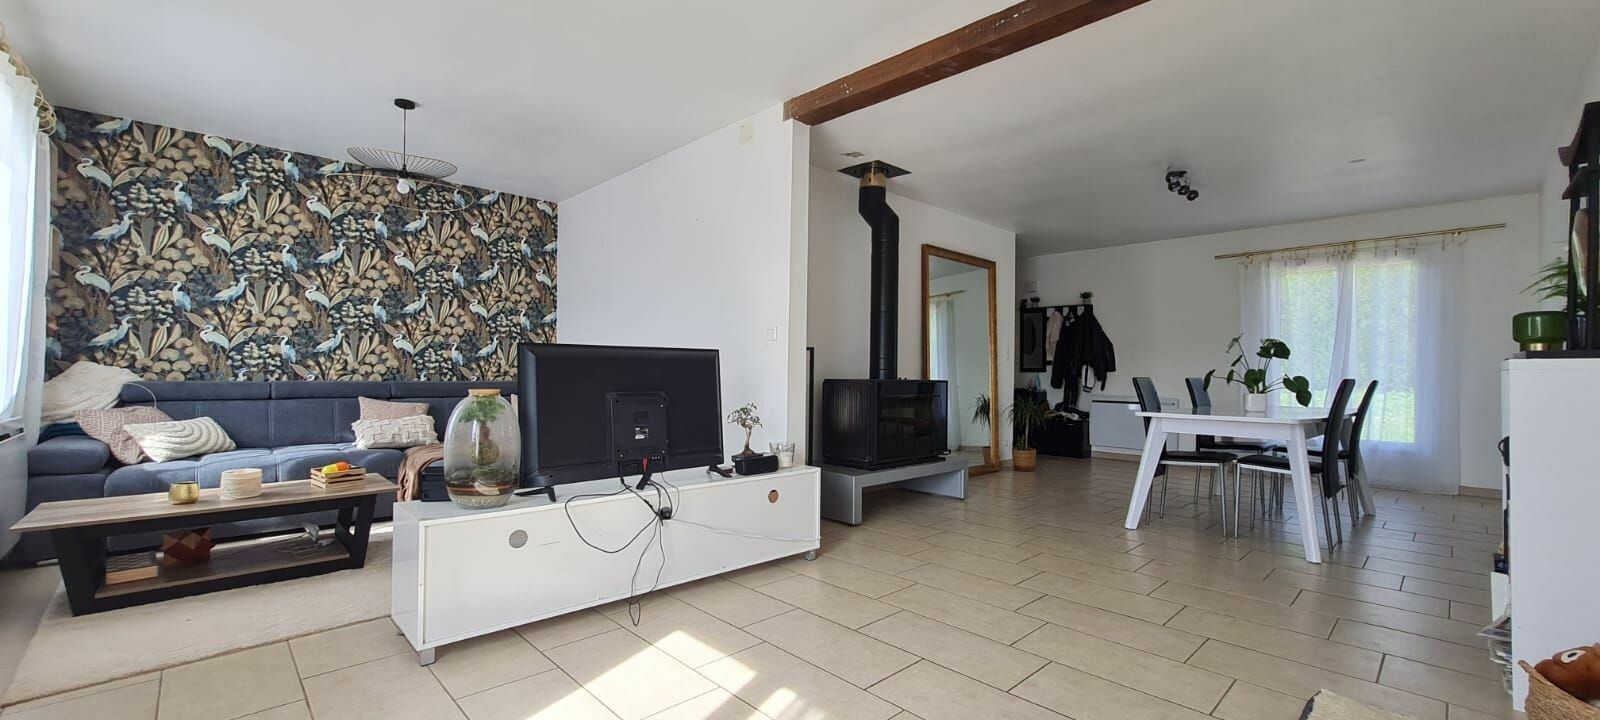 Maison à vendre 4 120m2 à Saâcy-sur-Marne vignette-7